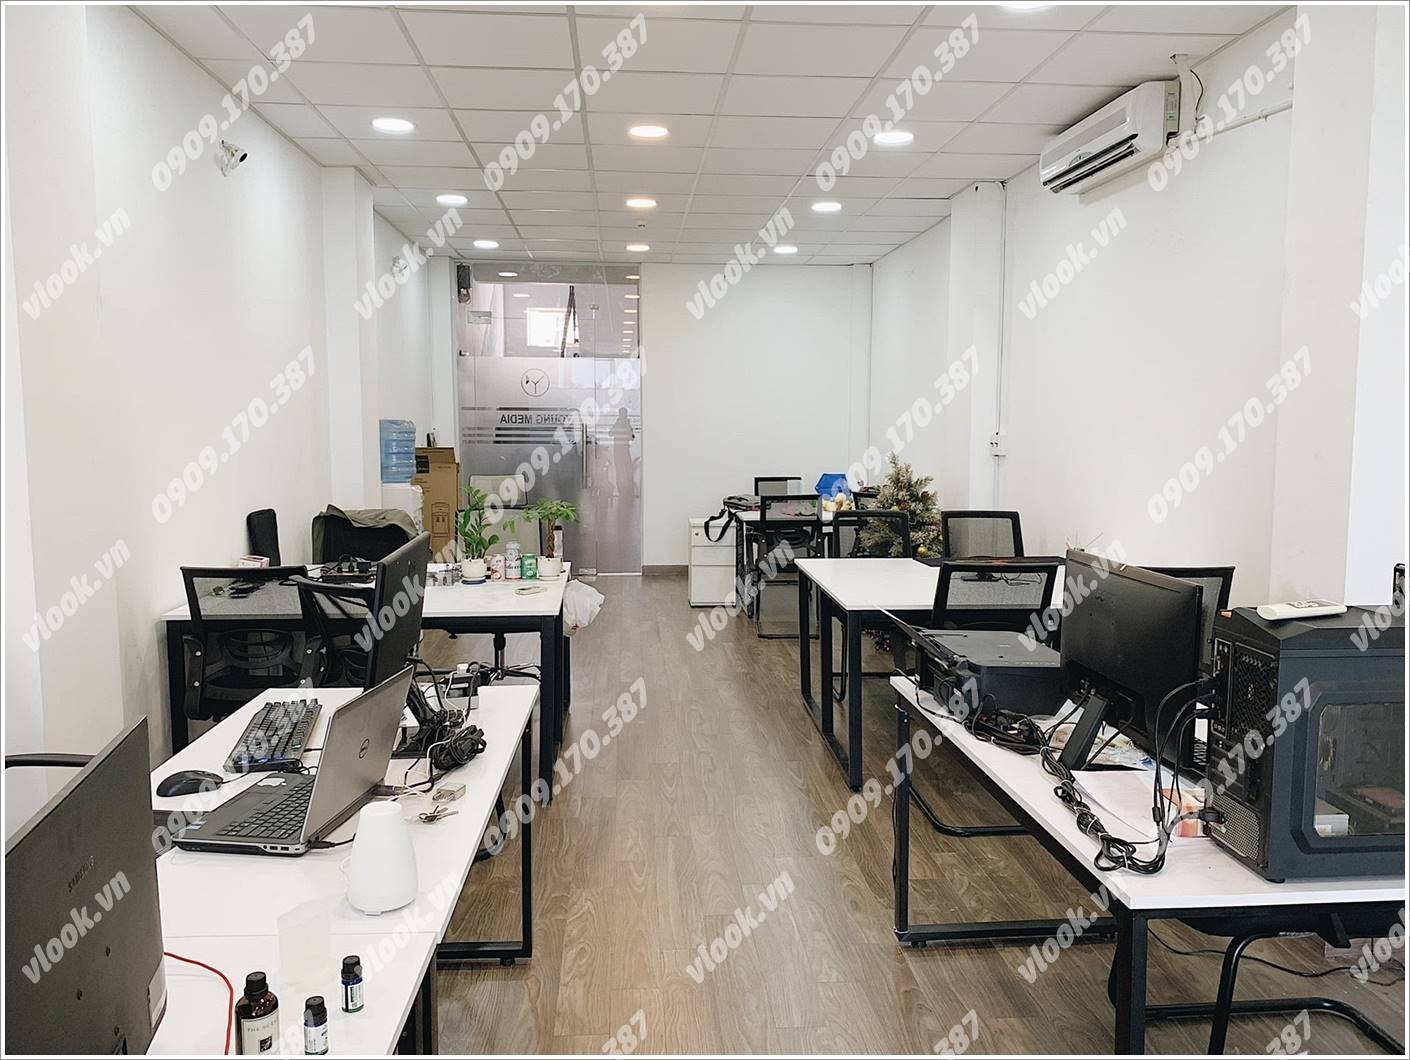 Cao ốc văn phòng cho thuê Tòa nhà Văn phòng Lũy Bán Bích Building, Quận Tân Phú, TP.HCM - vlook.vn